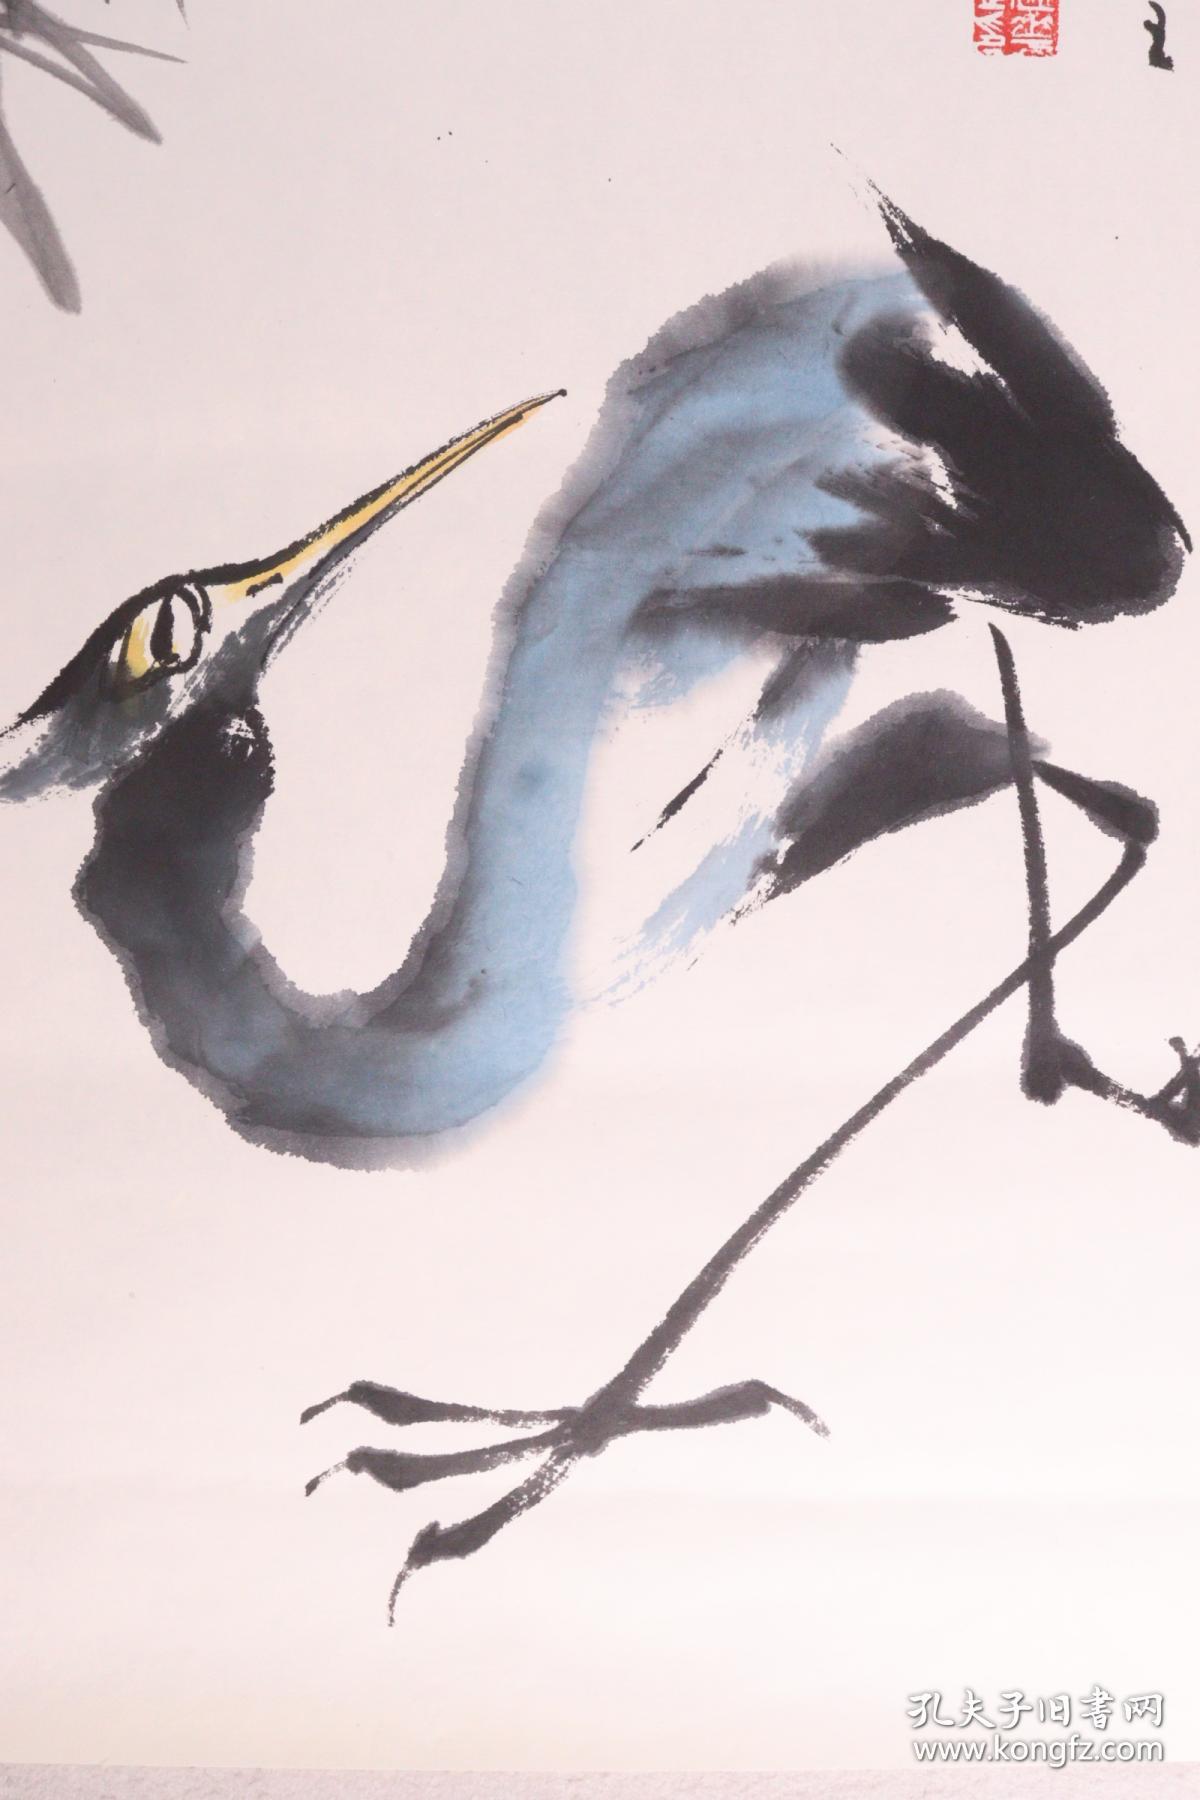 刘海粟弟子、著名书画家、中国书画家委员会副主任 刘建华 乙亥年（1995）水墨画作品《鹤》一幅（纸本托片，约2.6平尺，钤印：刘氏、建华之印）HXTX339884